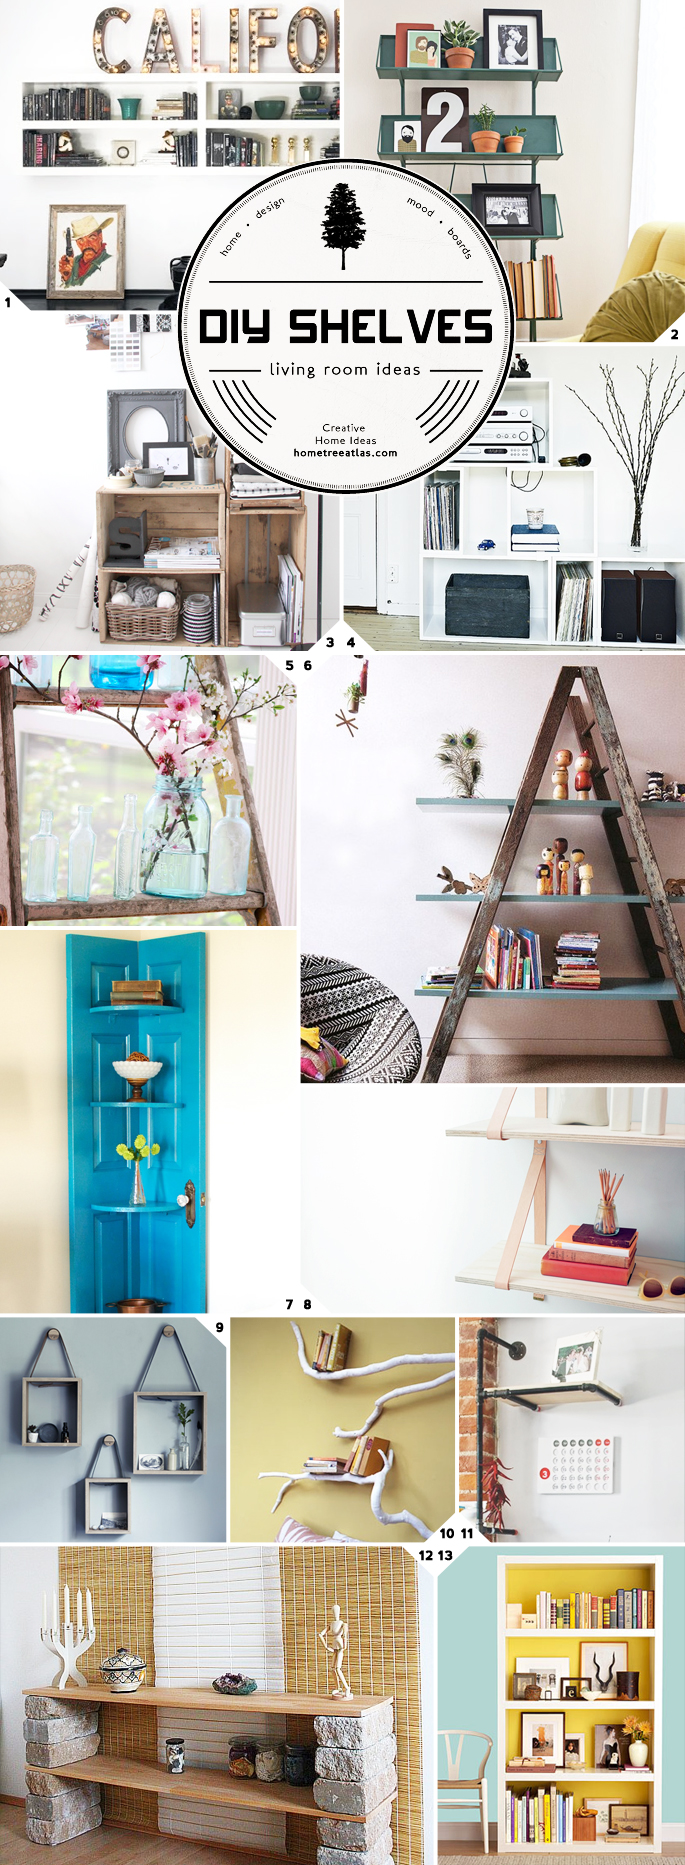 Ideas for DIY Living Room Shelves